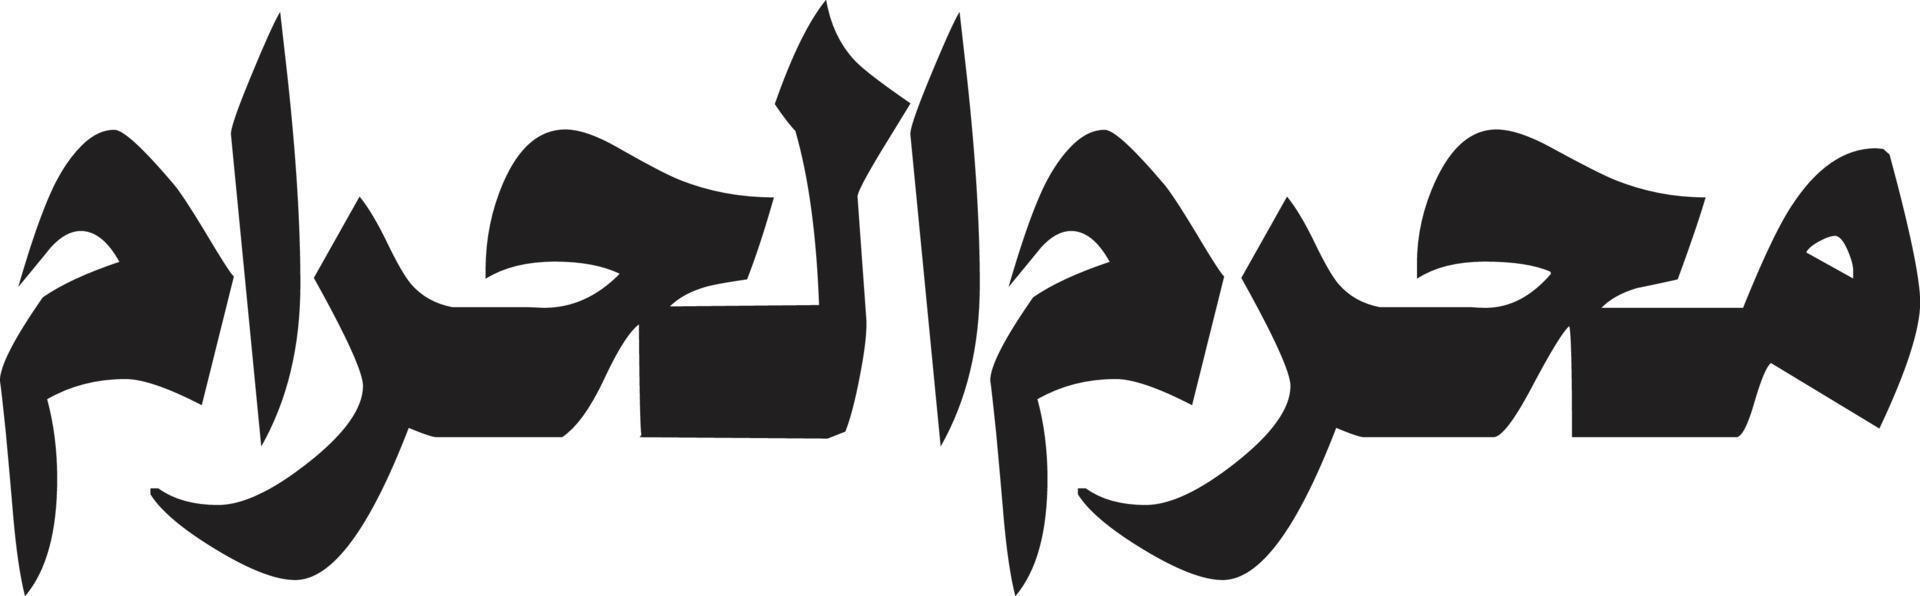 muharm al hraam titre calligraphie arabe islamique vecteur gratuit